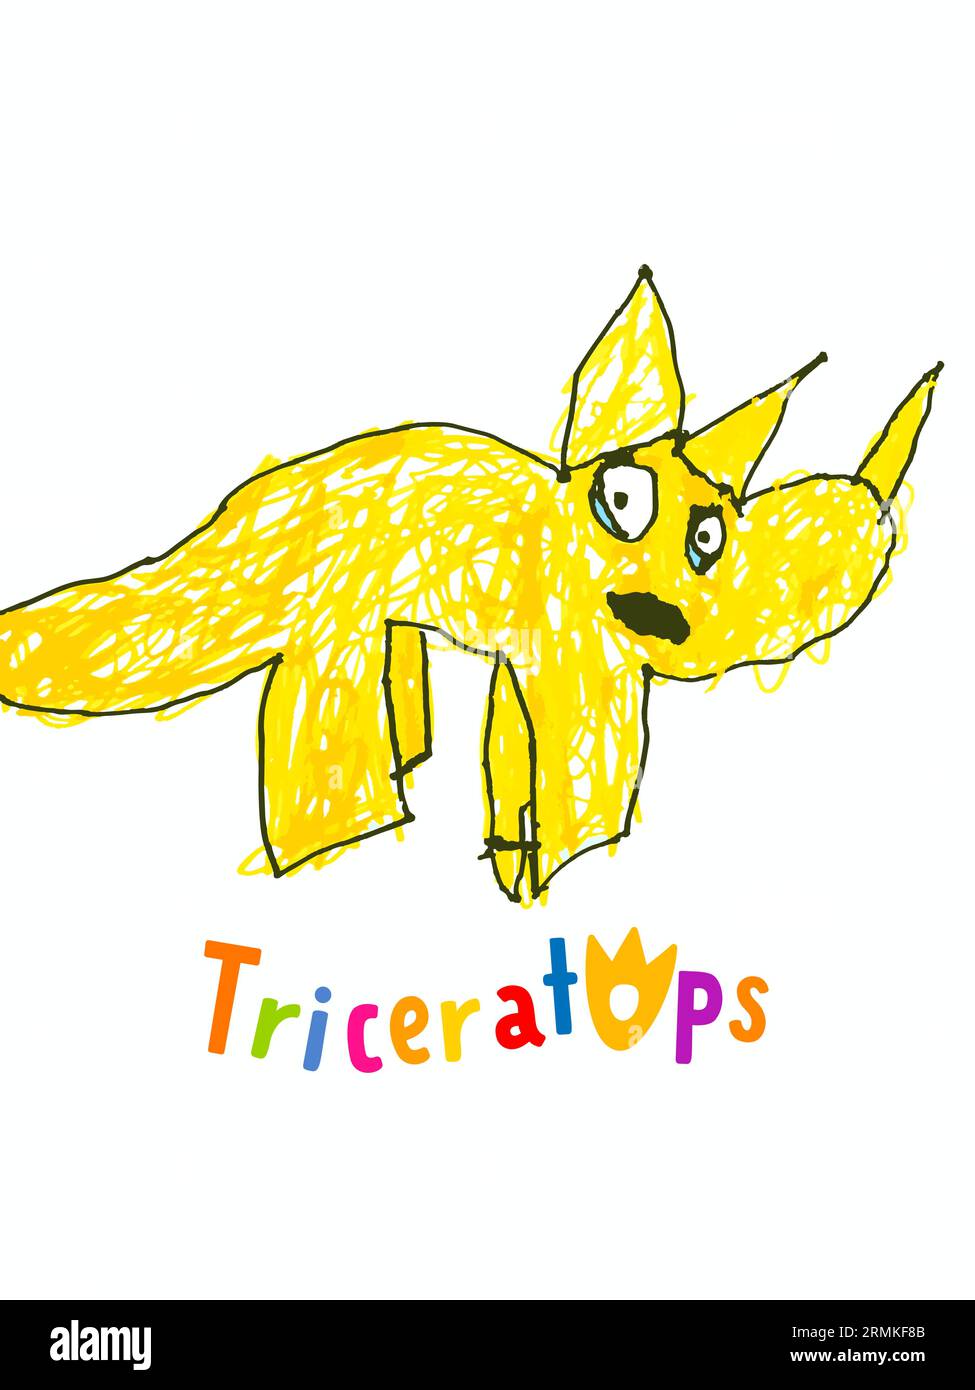 Disegno per bambini Triceratops. Dinosauro Triceratops in stile cartone animato su sfondo bianco. Illustrazione a matita vettoriale per t-shirt o compleanno Illustrazione Vettoriale